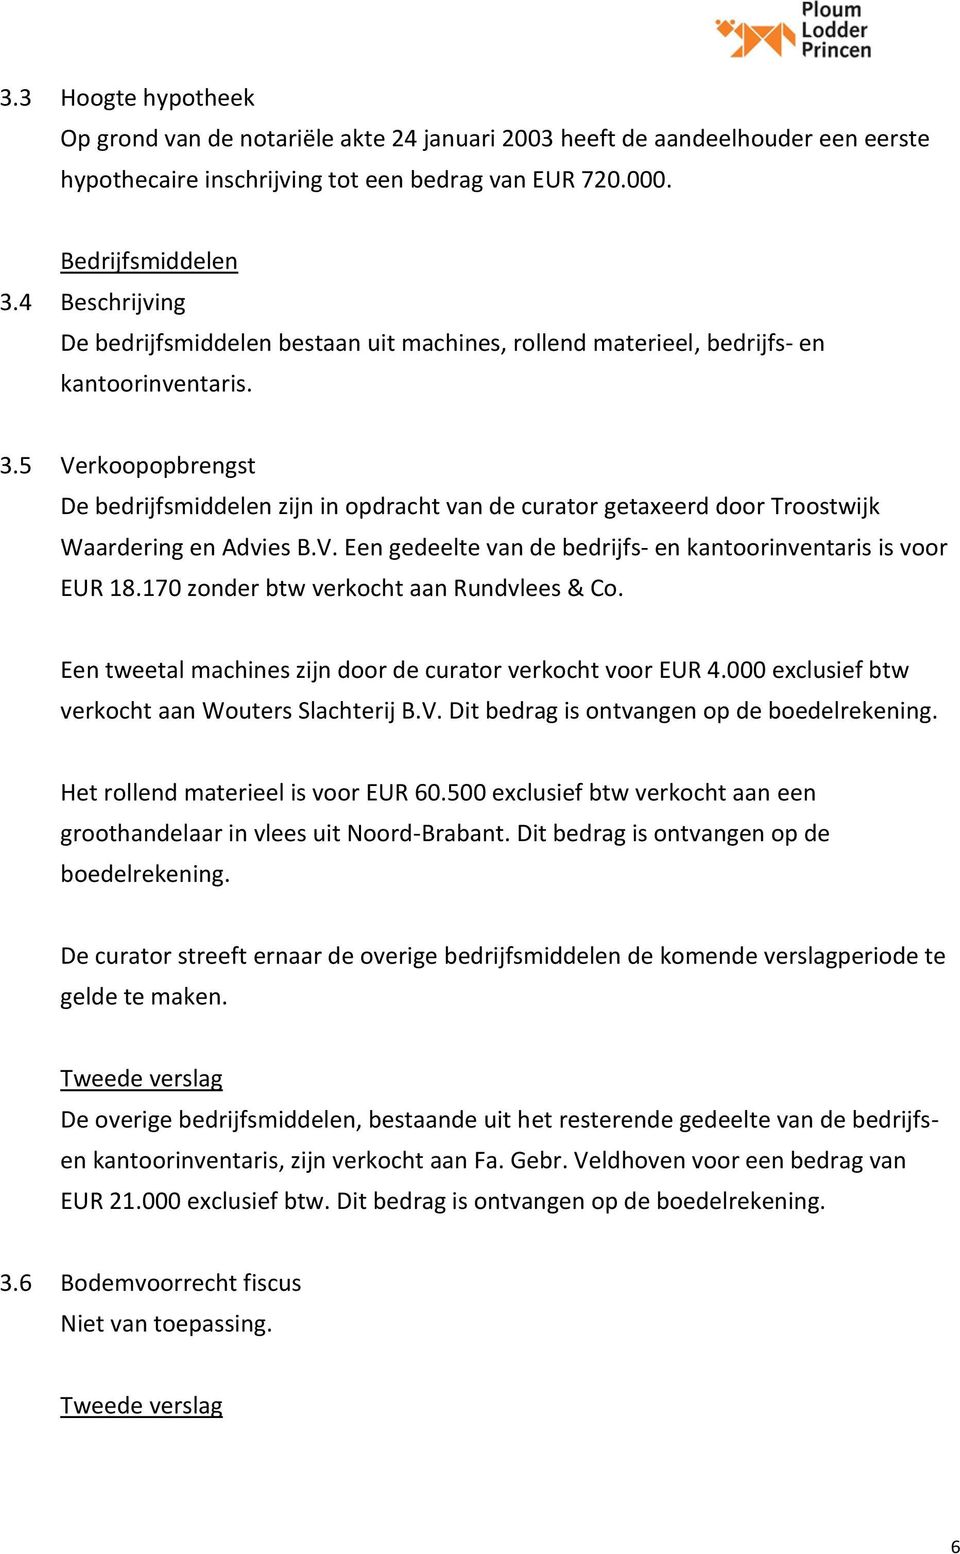 5 Verkoopopbrengst De bedrijfsmiddelen zijn in opdracht van de curator getaxeerd door Troostwijk Waardering en Advies B.V. Een gedeelte van de bedrijfs- en kantoorinventaris is voor EUR 18.